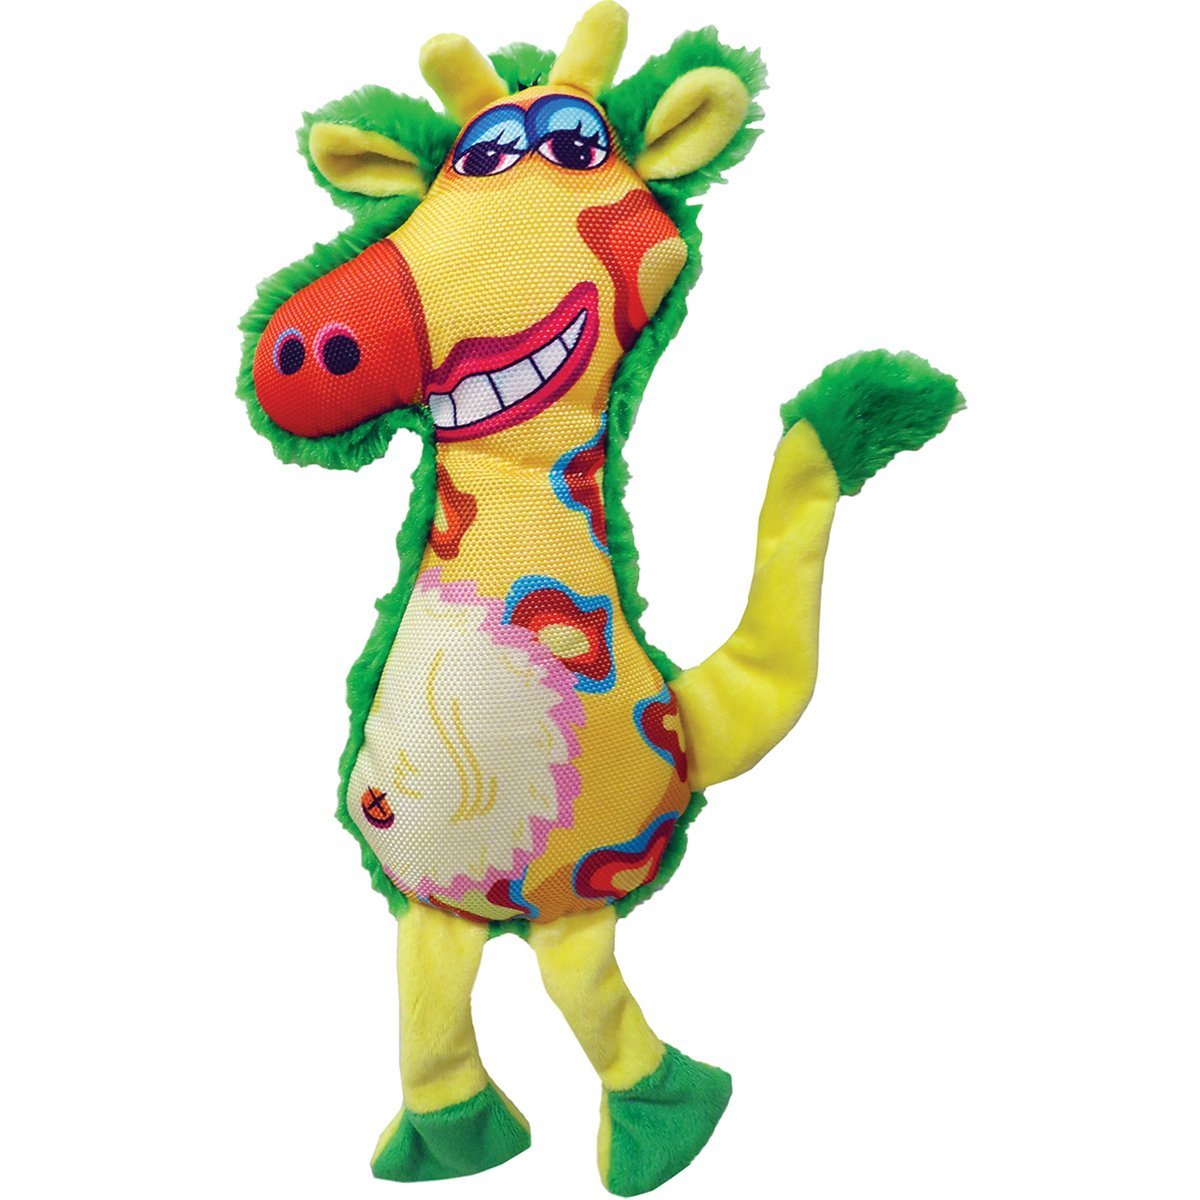 Plush Gina Giraffe Dog Toy 13"